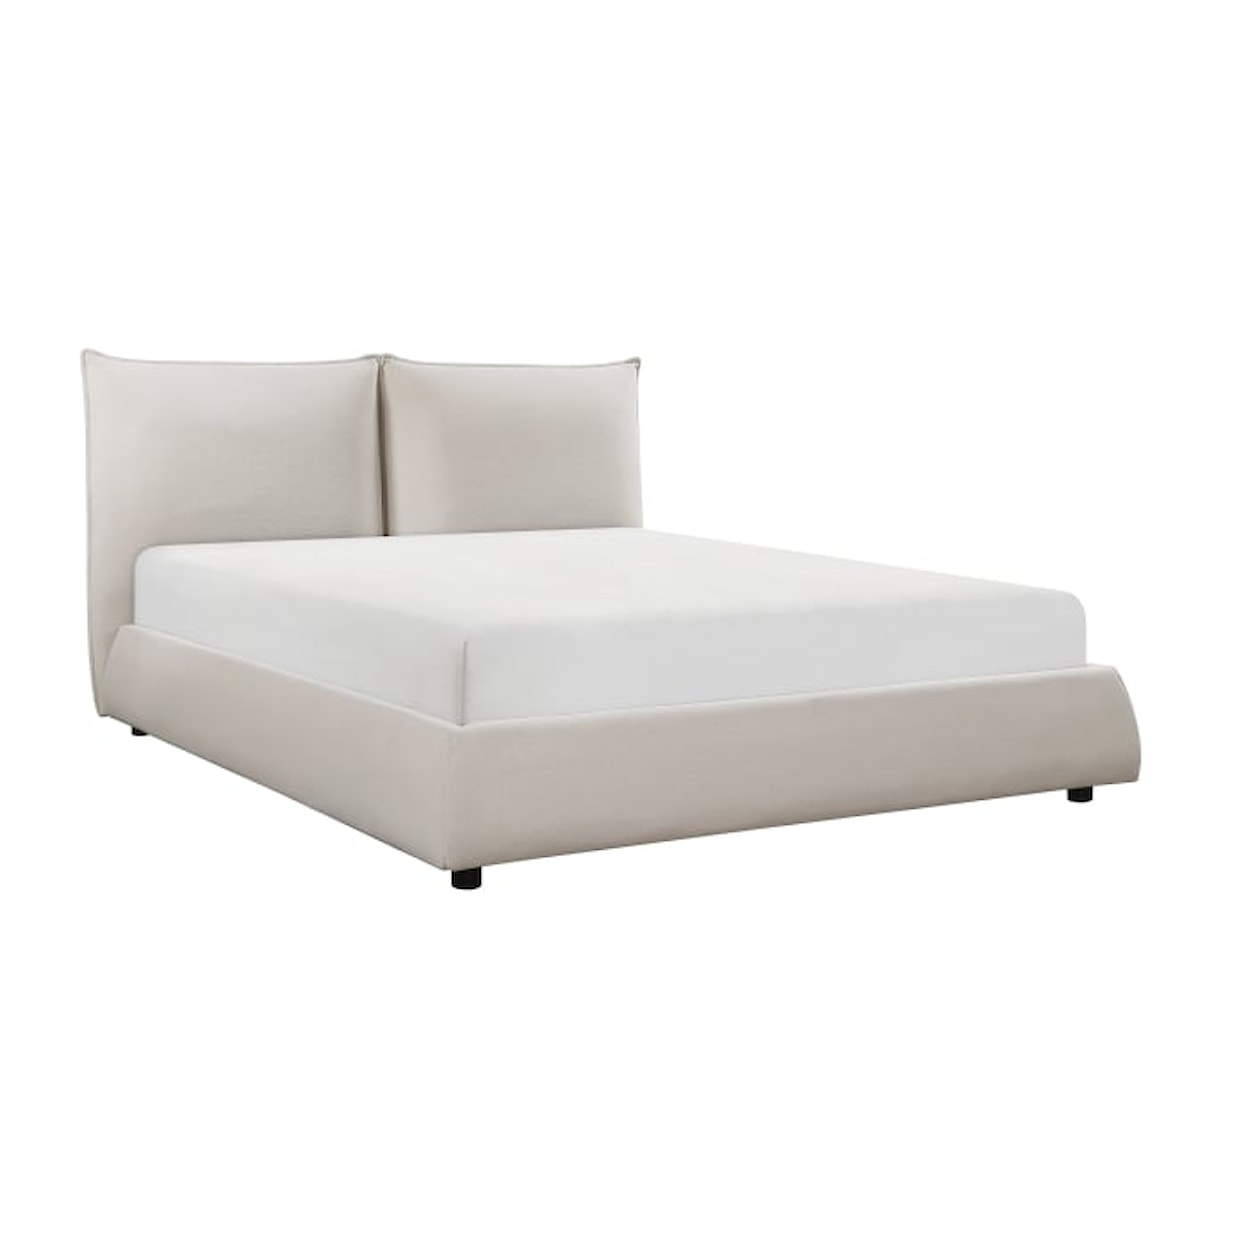 Homelegance Furniture Linna Full Platform Bed